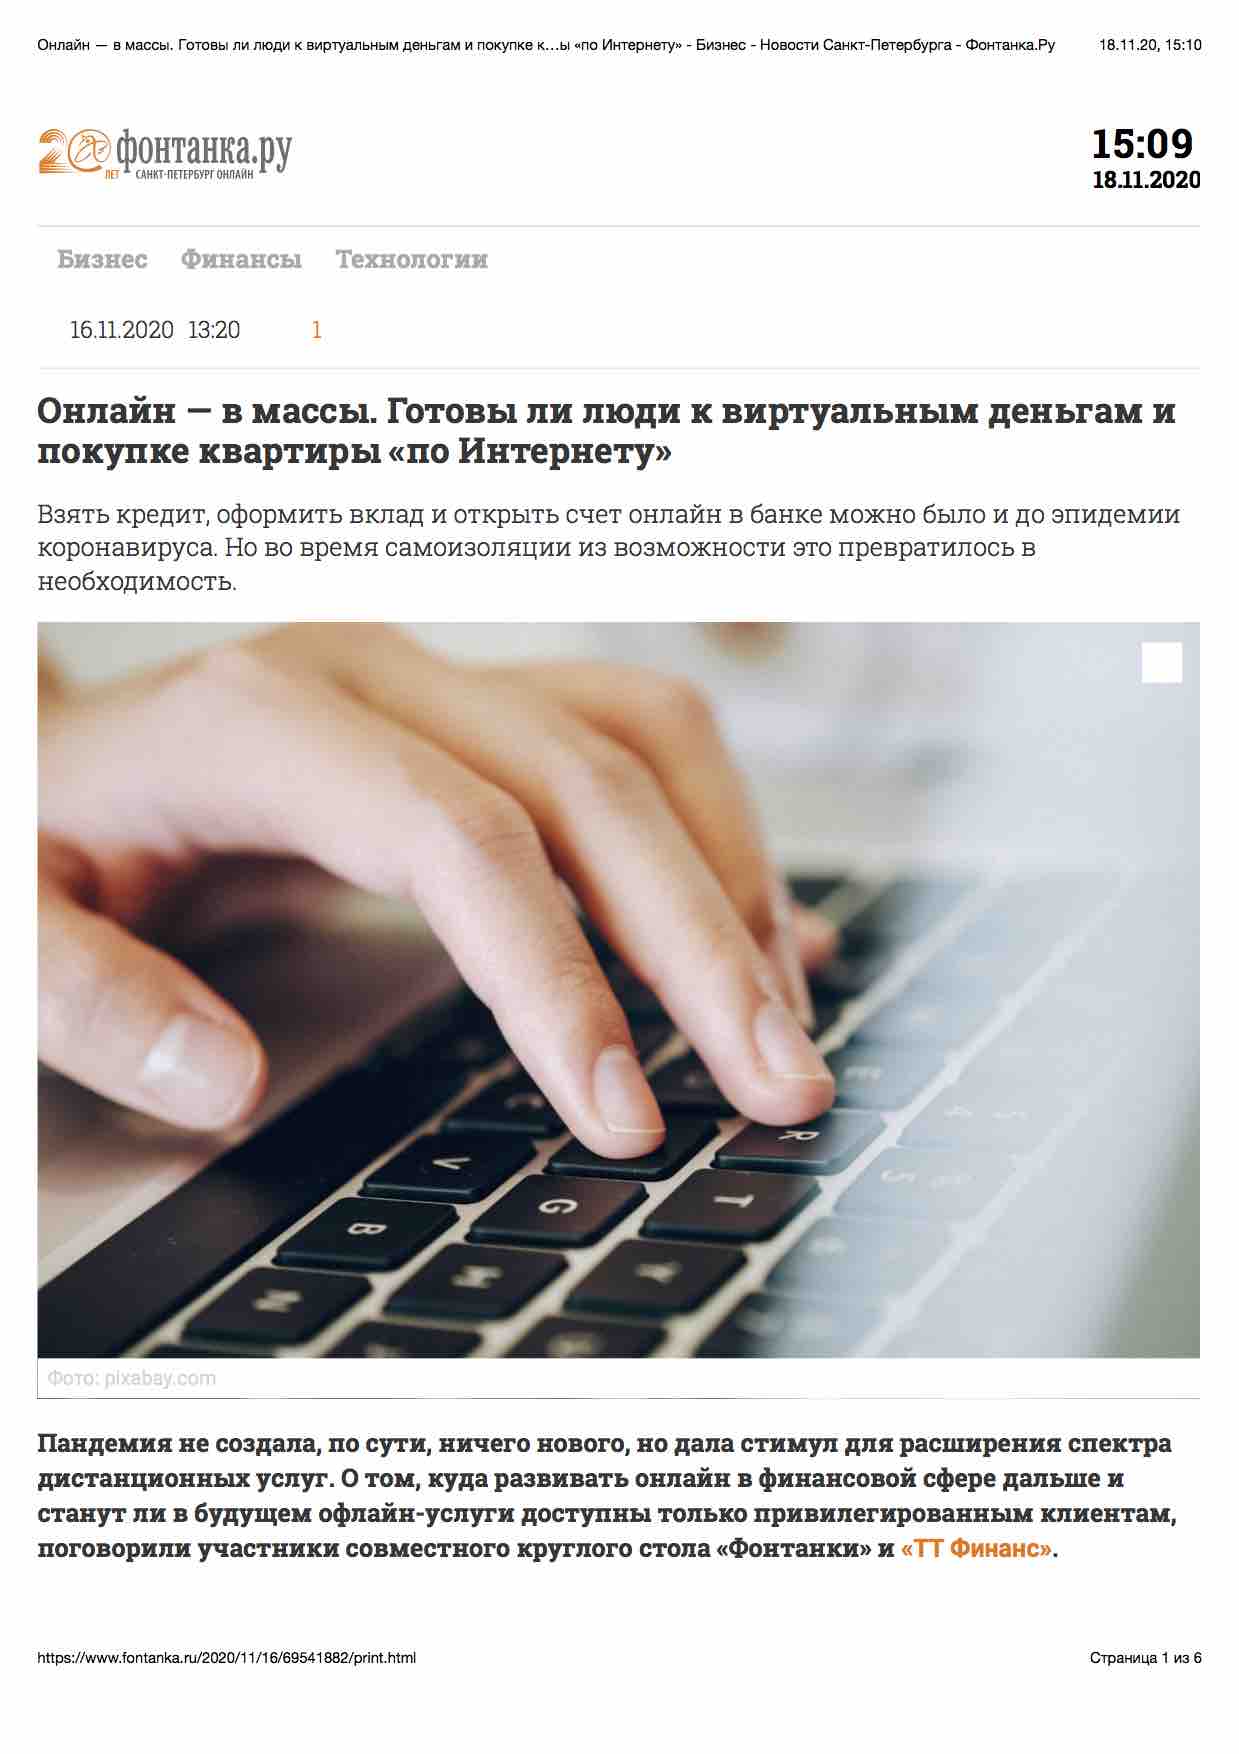 ТТ Финансы. Финансовые услуги Санкт-Петербурга. «Онлайн - технологии - 2020» .